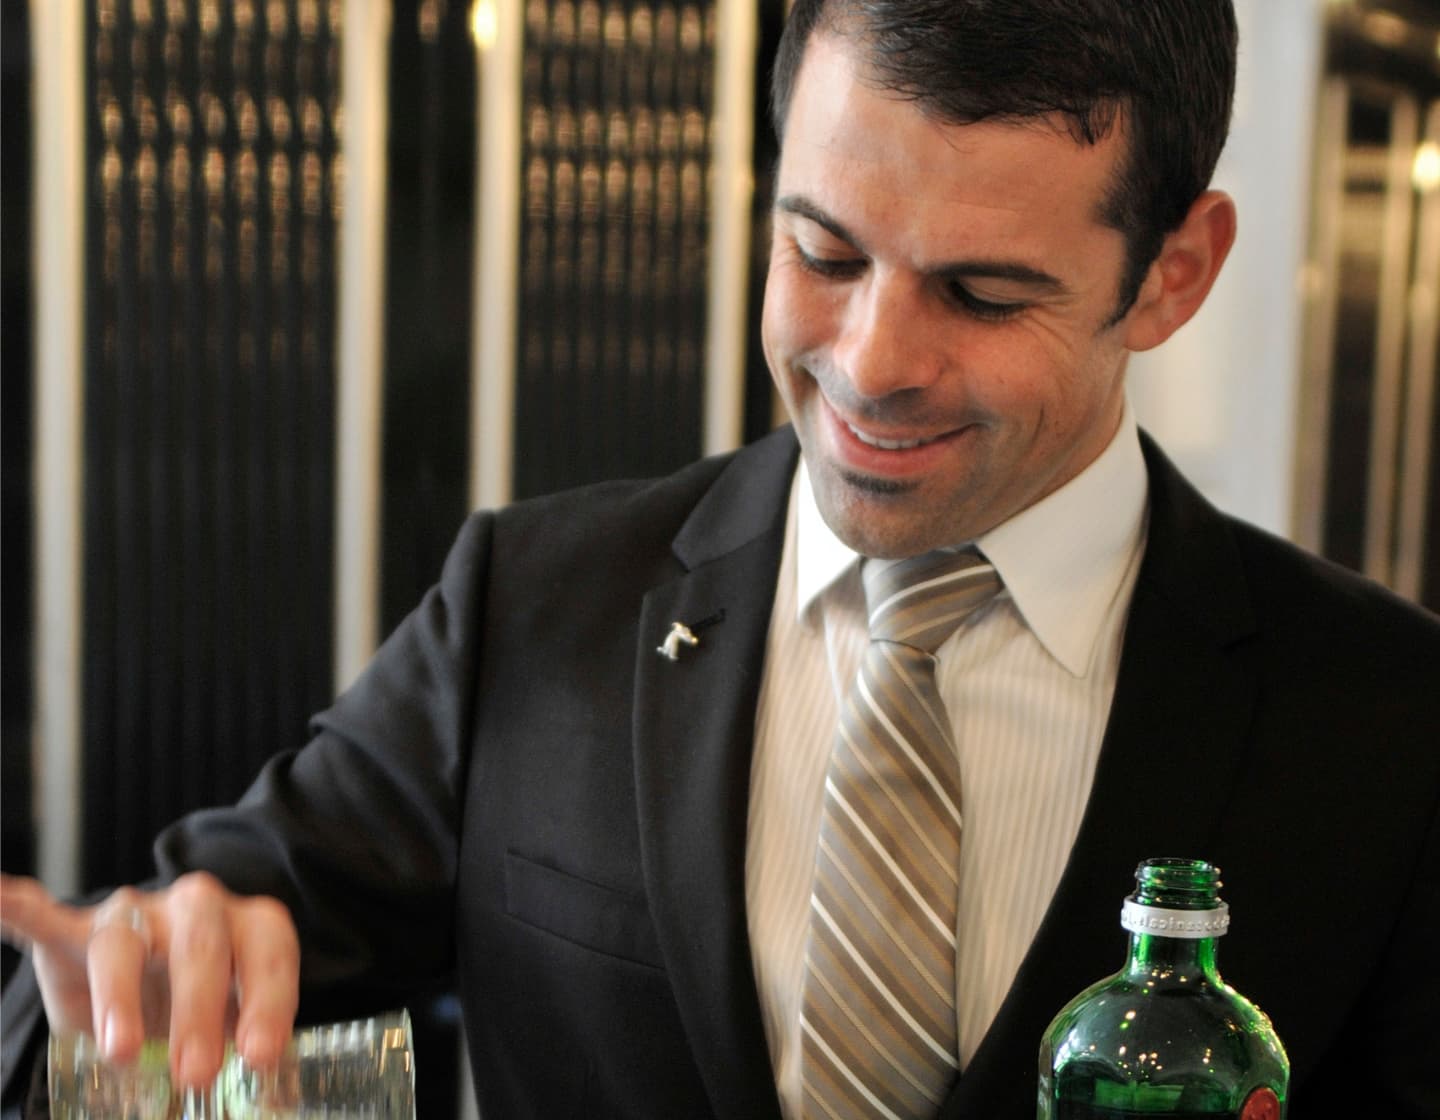 Imagen de Ago Perrone en traje sosteniendo una coctelera.